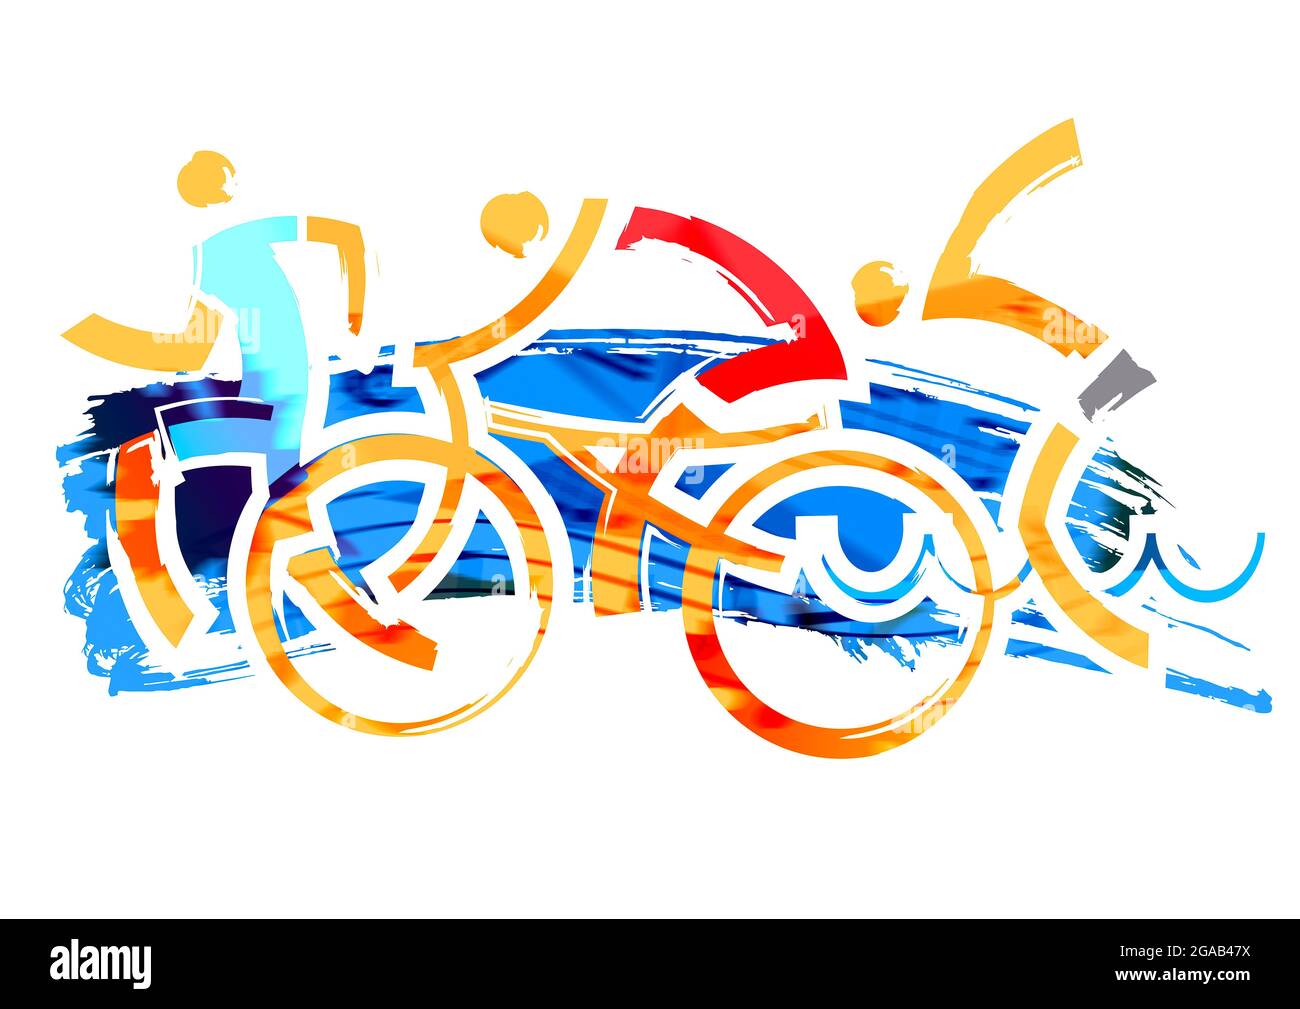 Triathlon-Rennen. Drei Triathlon-Athleten, ausdrucksstarke stilisierte Illustration.Imitation der Pinselzeichnung. Stockfoto